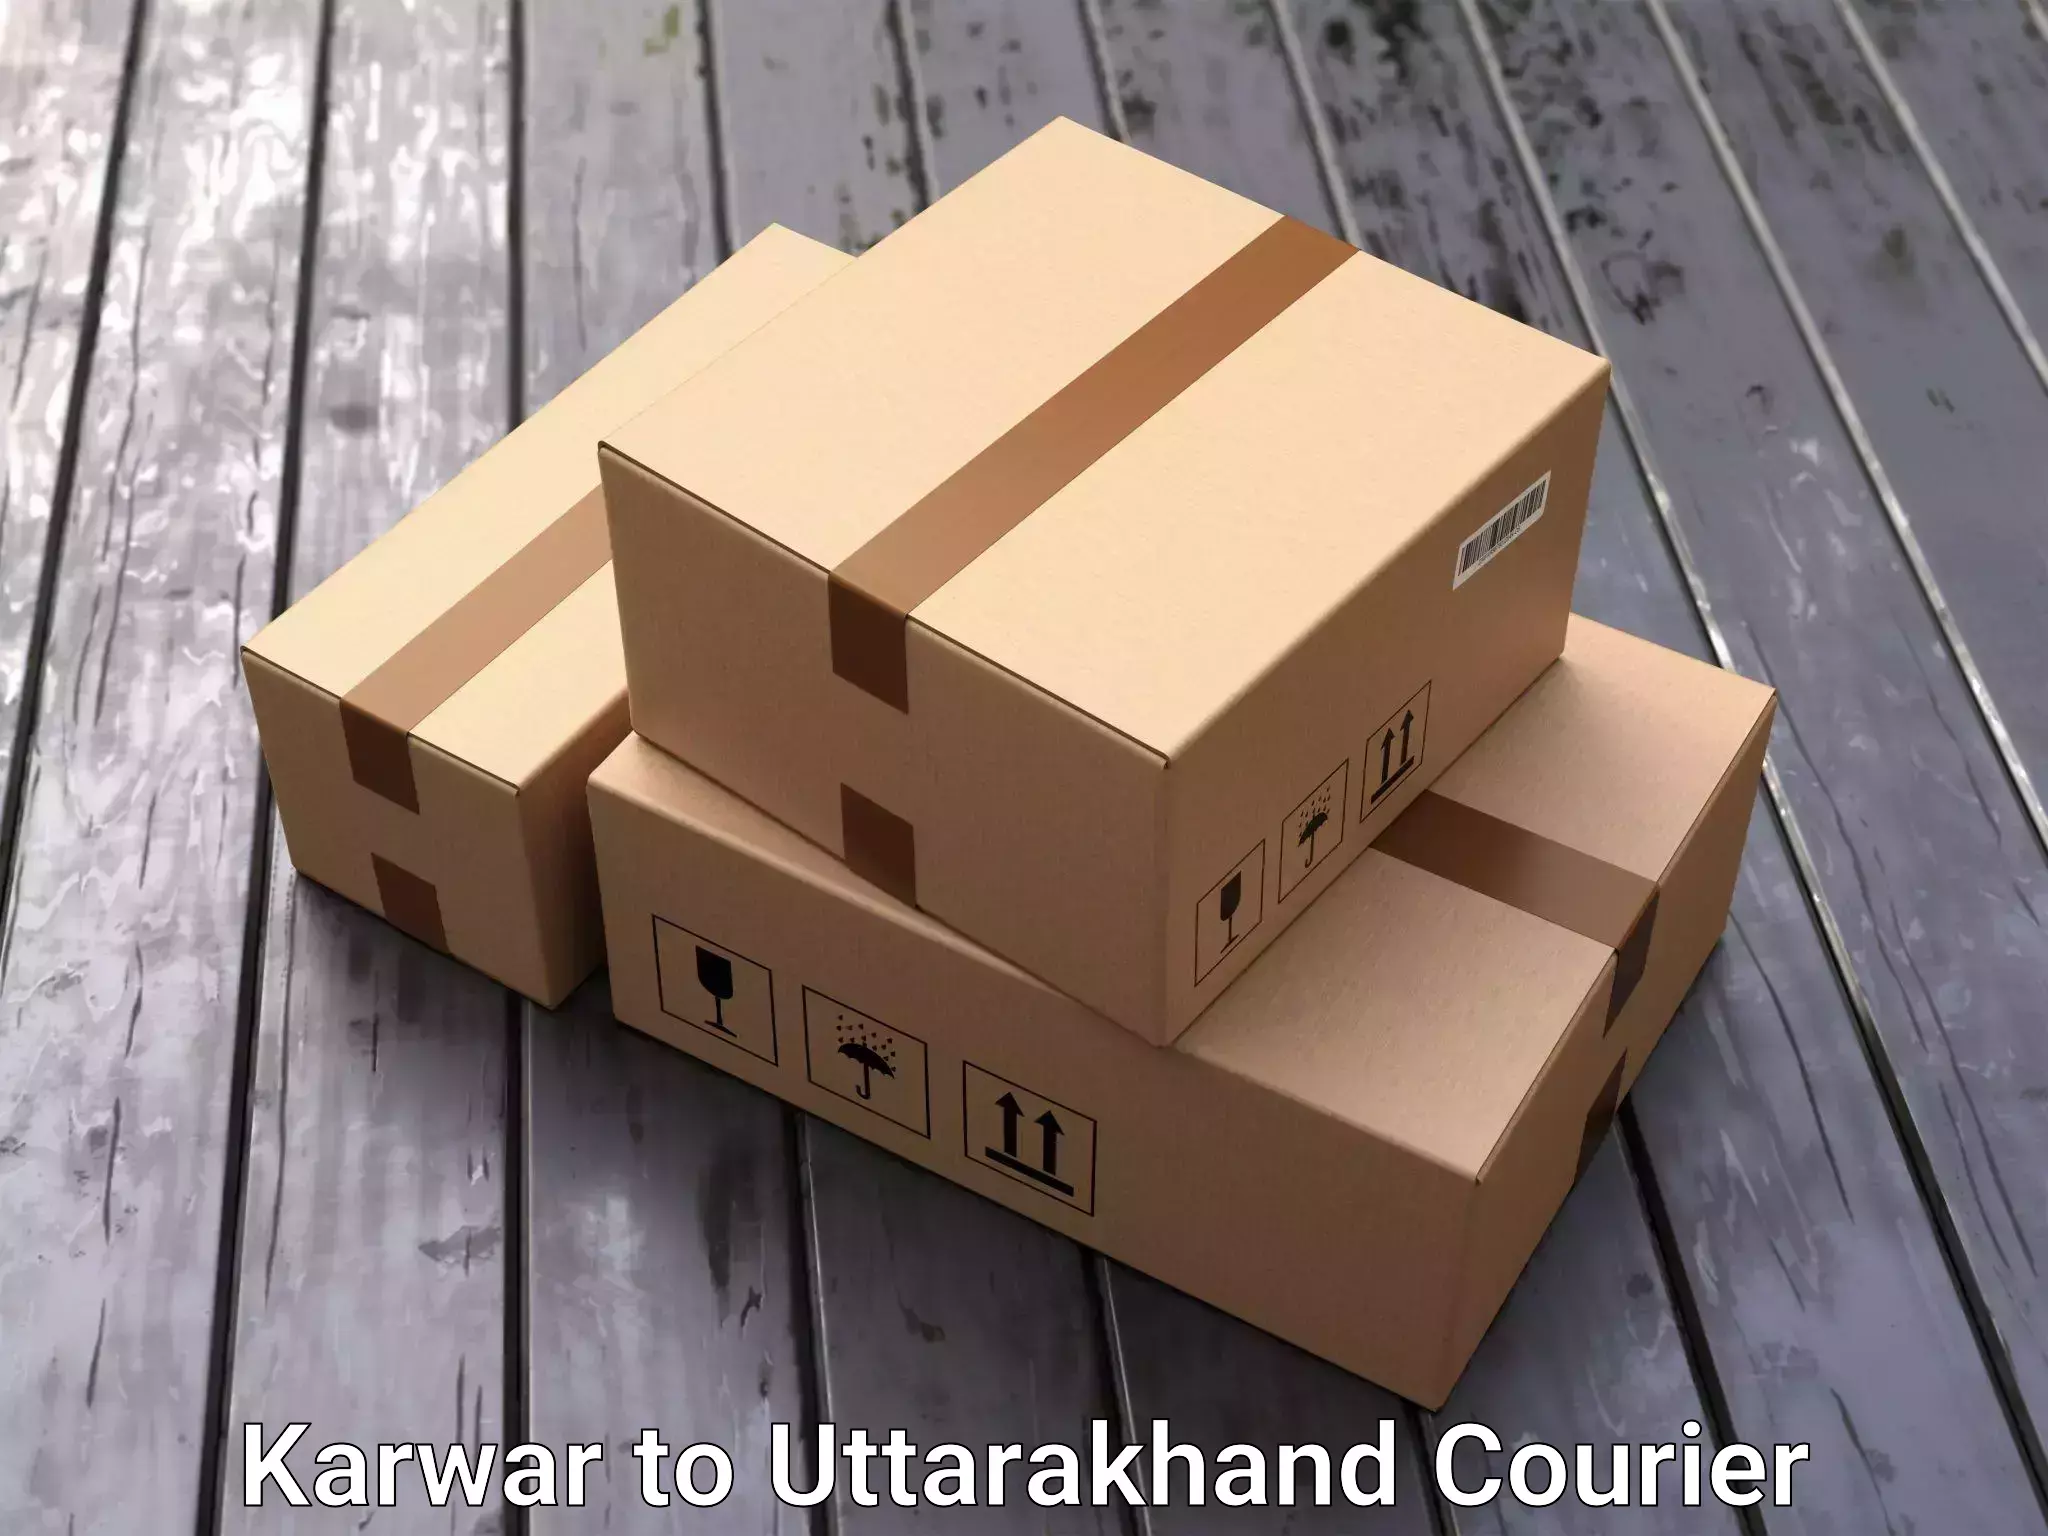 Trusted household movers Karwar to Uttarakhand